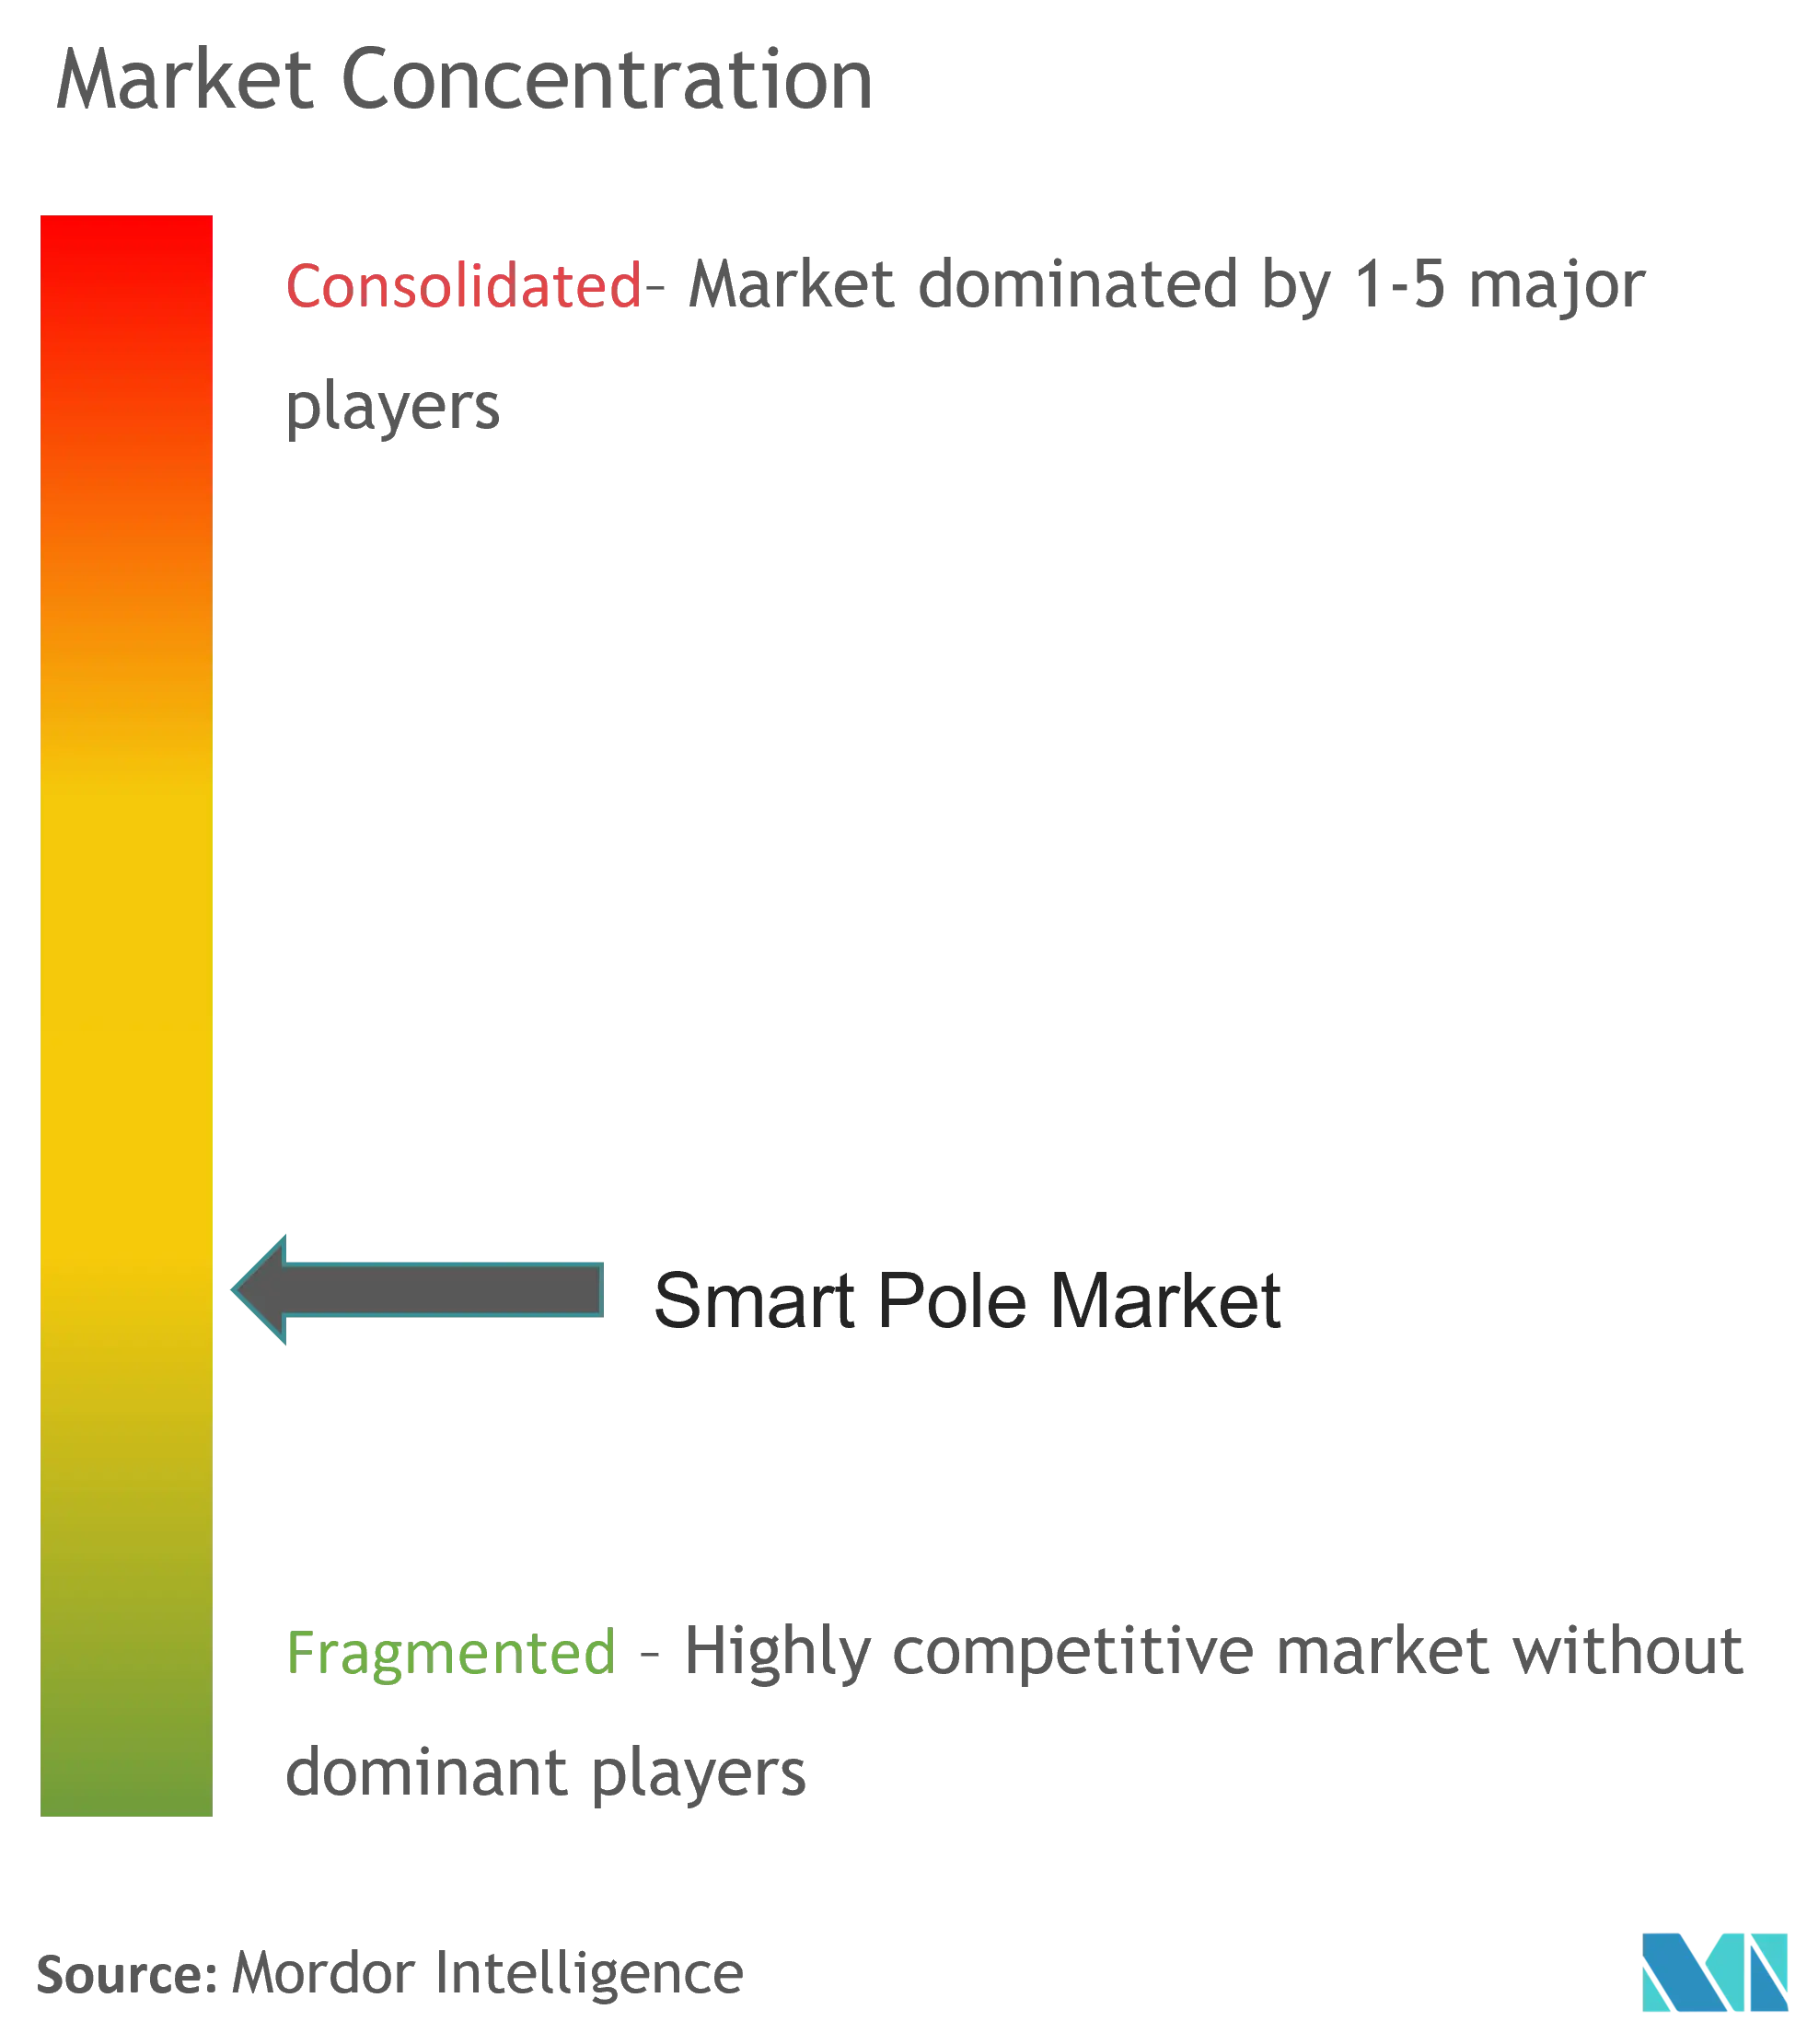 Smart Pole Market Concentration